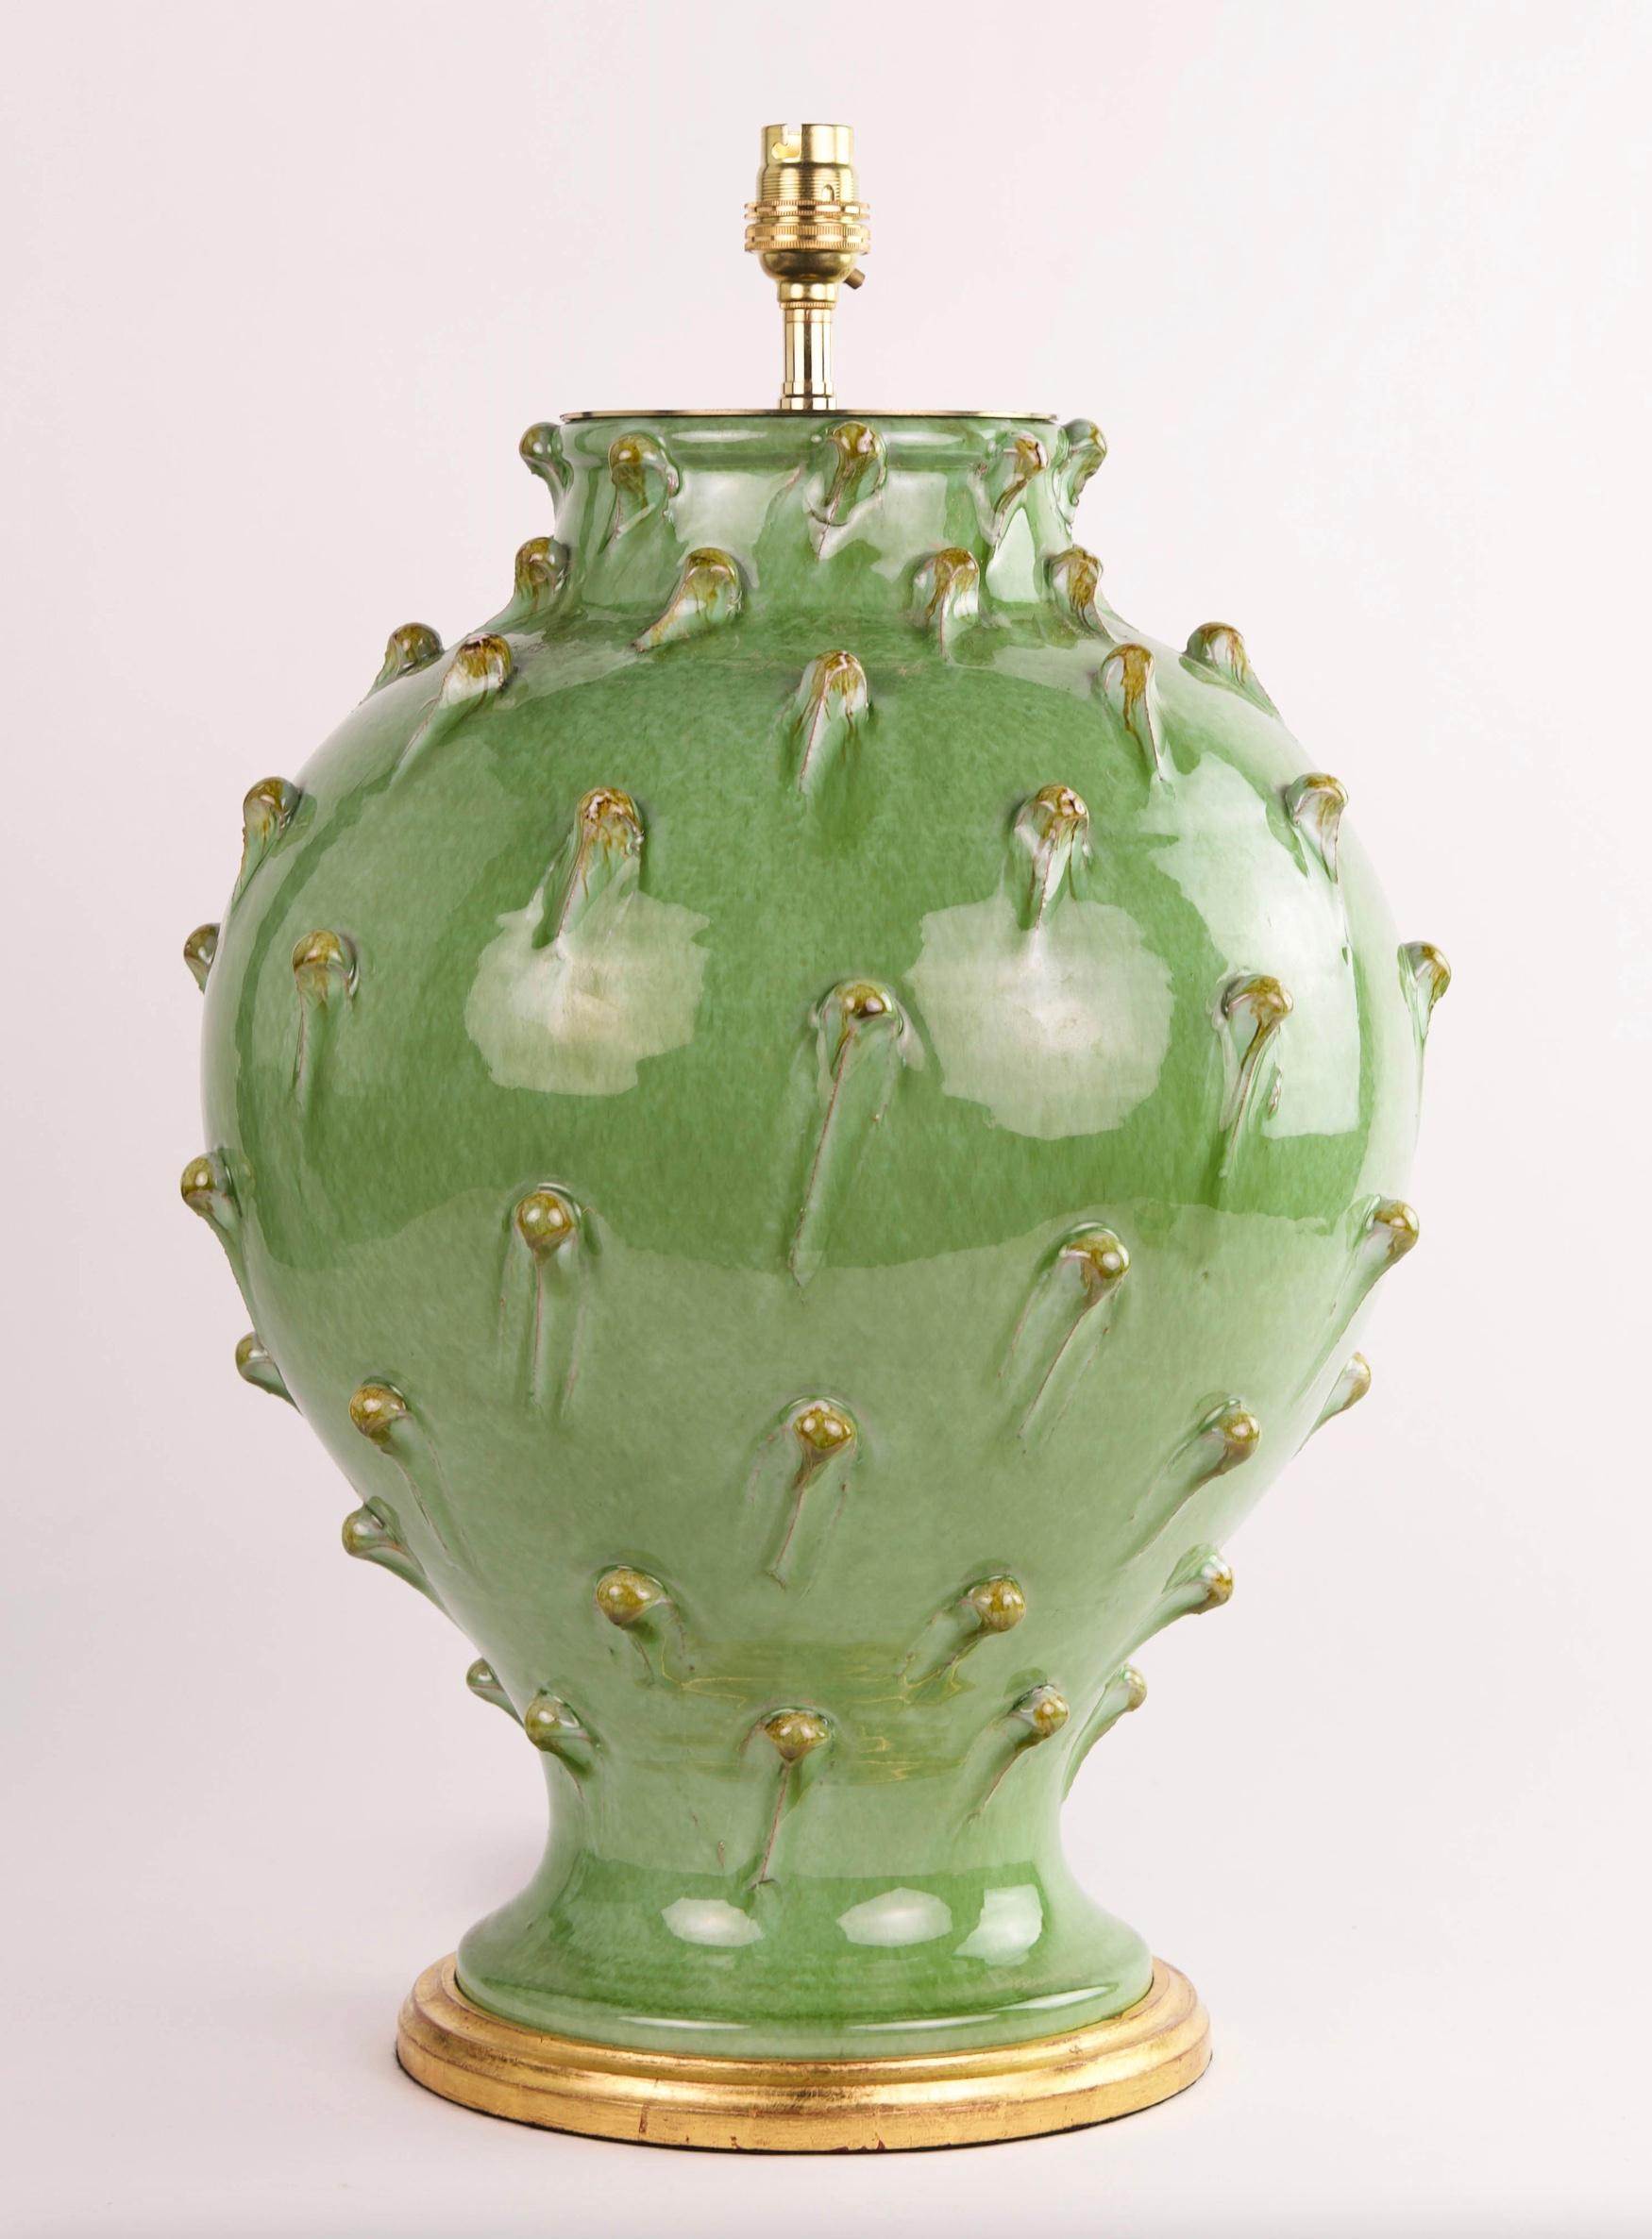 Eine wunderbare Mitte des 20. Jahrhunderts italienisches Design grün glasiert Tischlampe, jetzt montiert als eine Lampe mit einer Hand vergoldet gedreht Basis.

Maße: Höhe der Vase: 16 1/2 in (42 cm) einschließlich vergoldetem Sockel, aber ohne